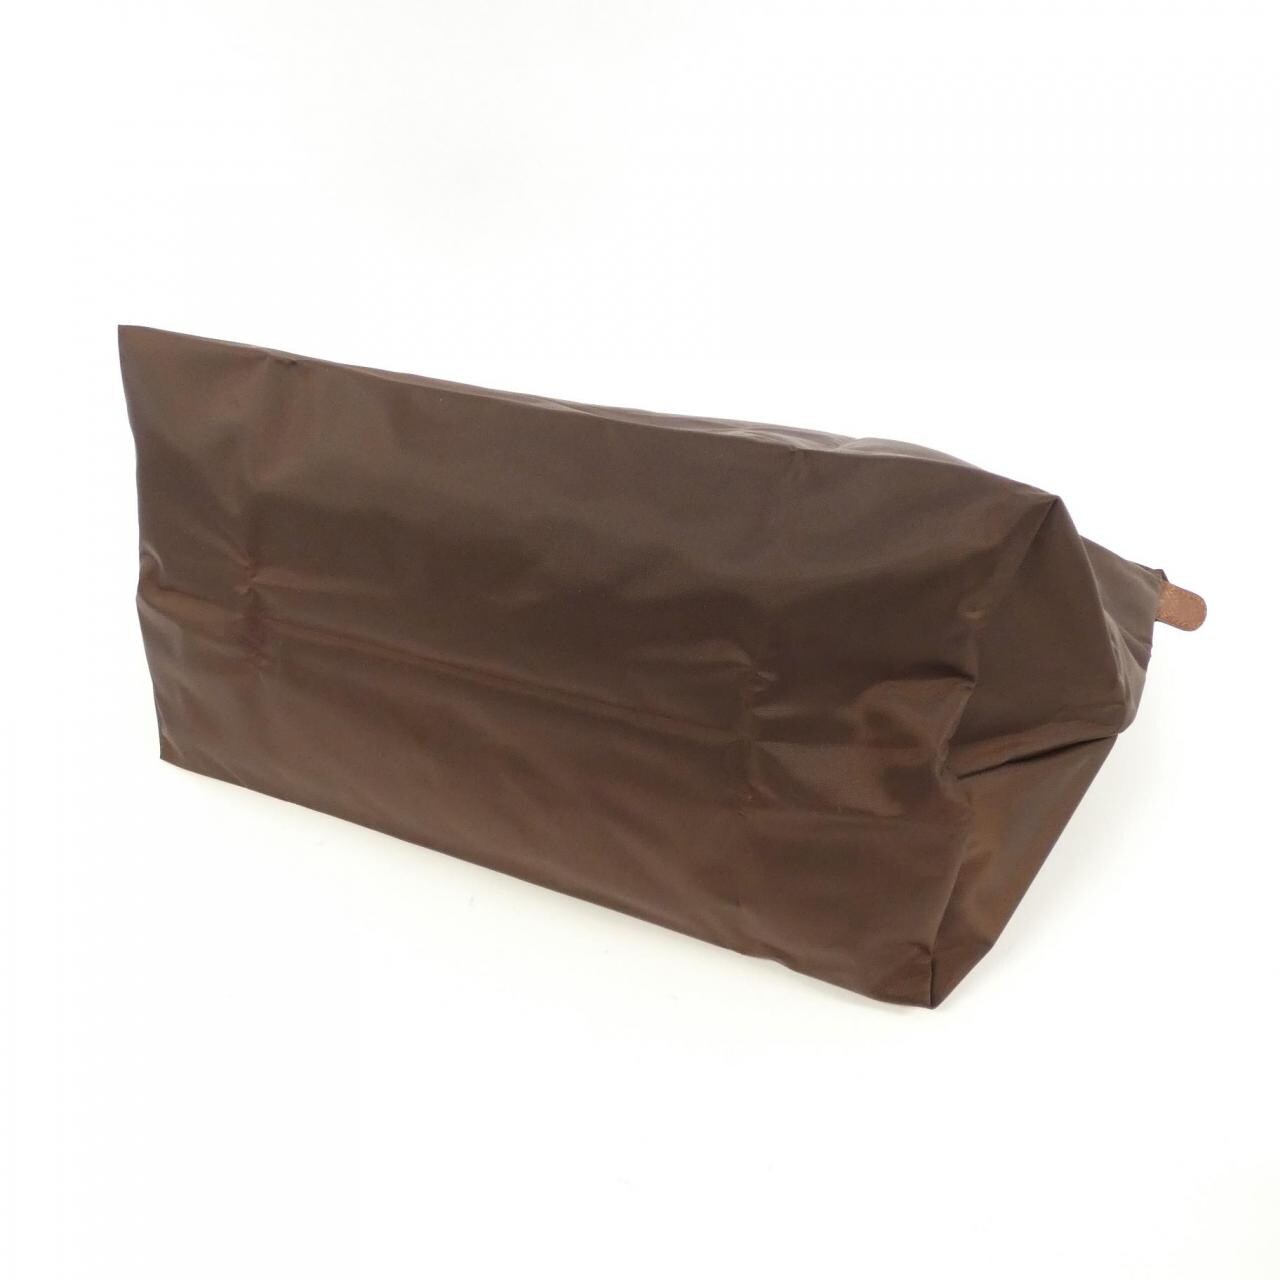 [BRAND NEW] Longchamp Le Pliage 1624 089 Boston Bag